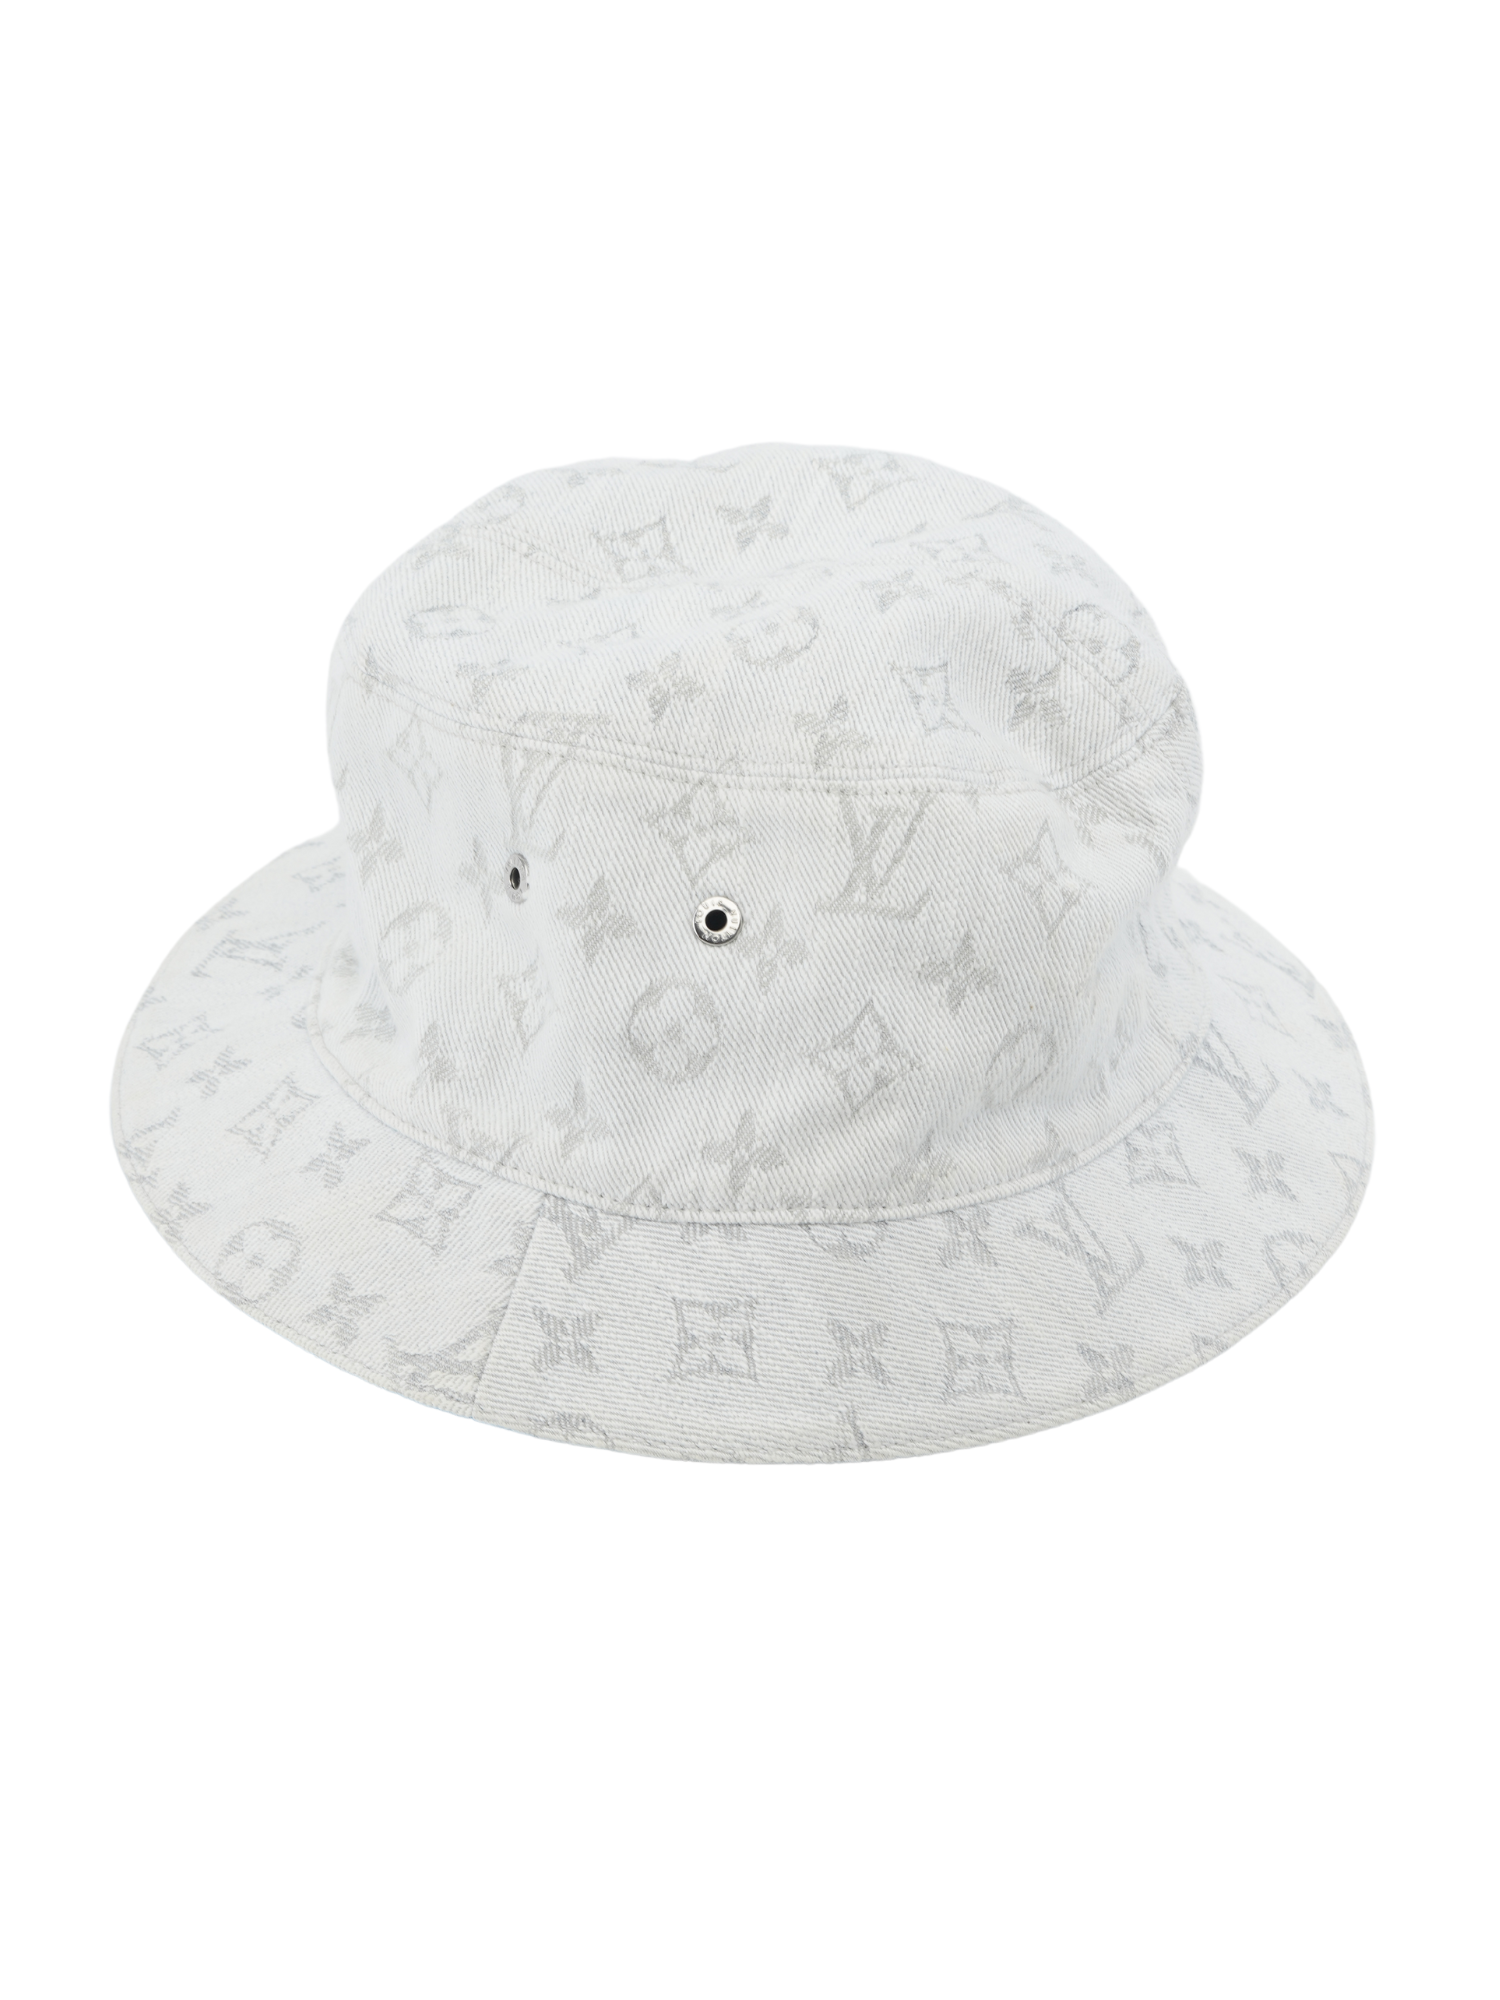 Louis Vuitton Denim Monogram Reversible Essential Bucket Hat w/ Tags - Blue  Hats, Accessories - LOU746244